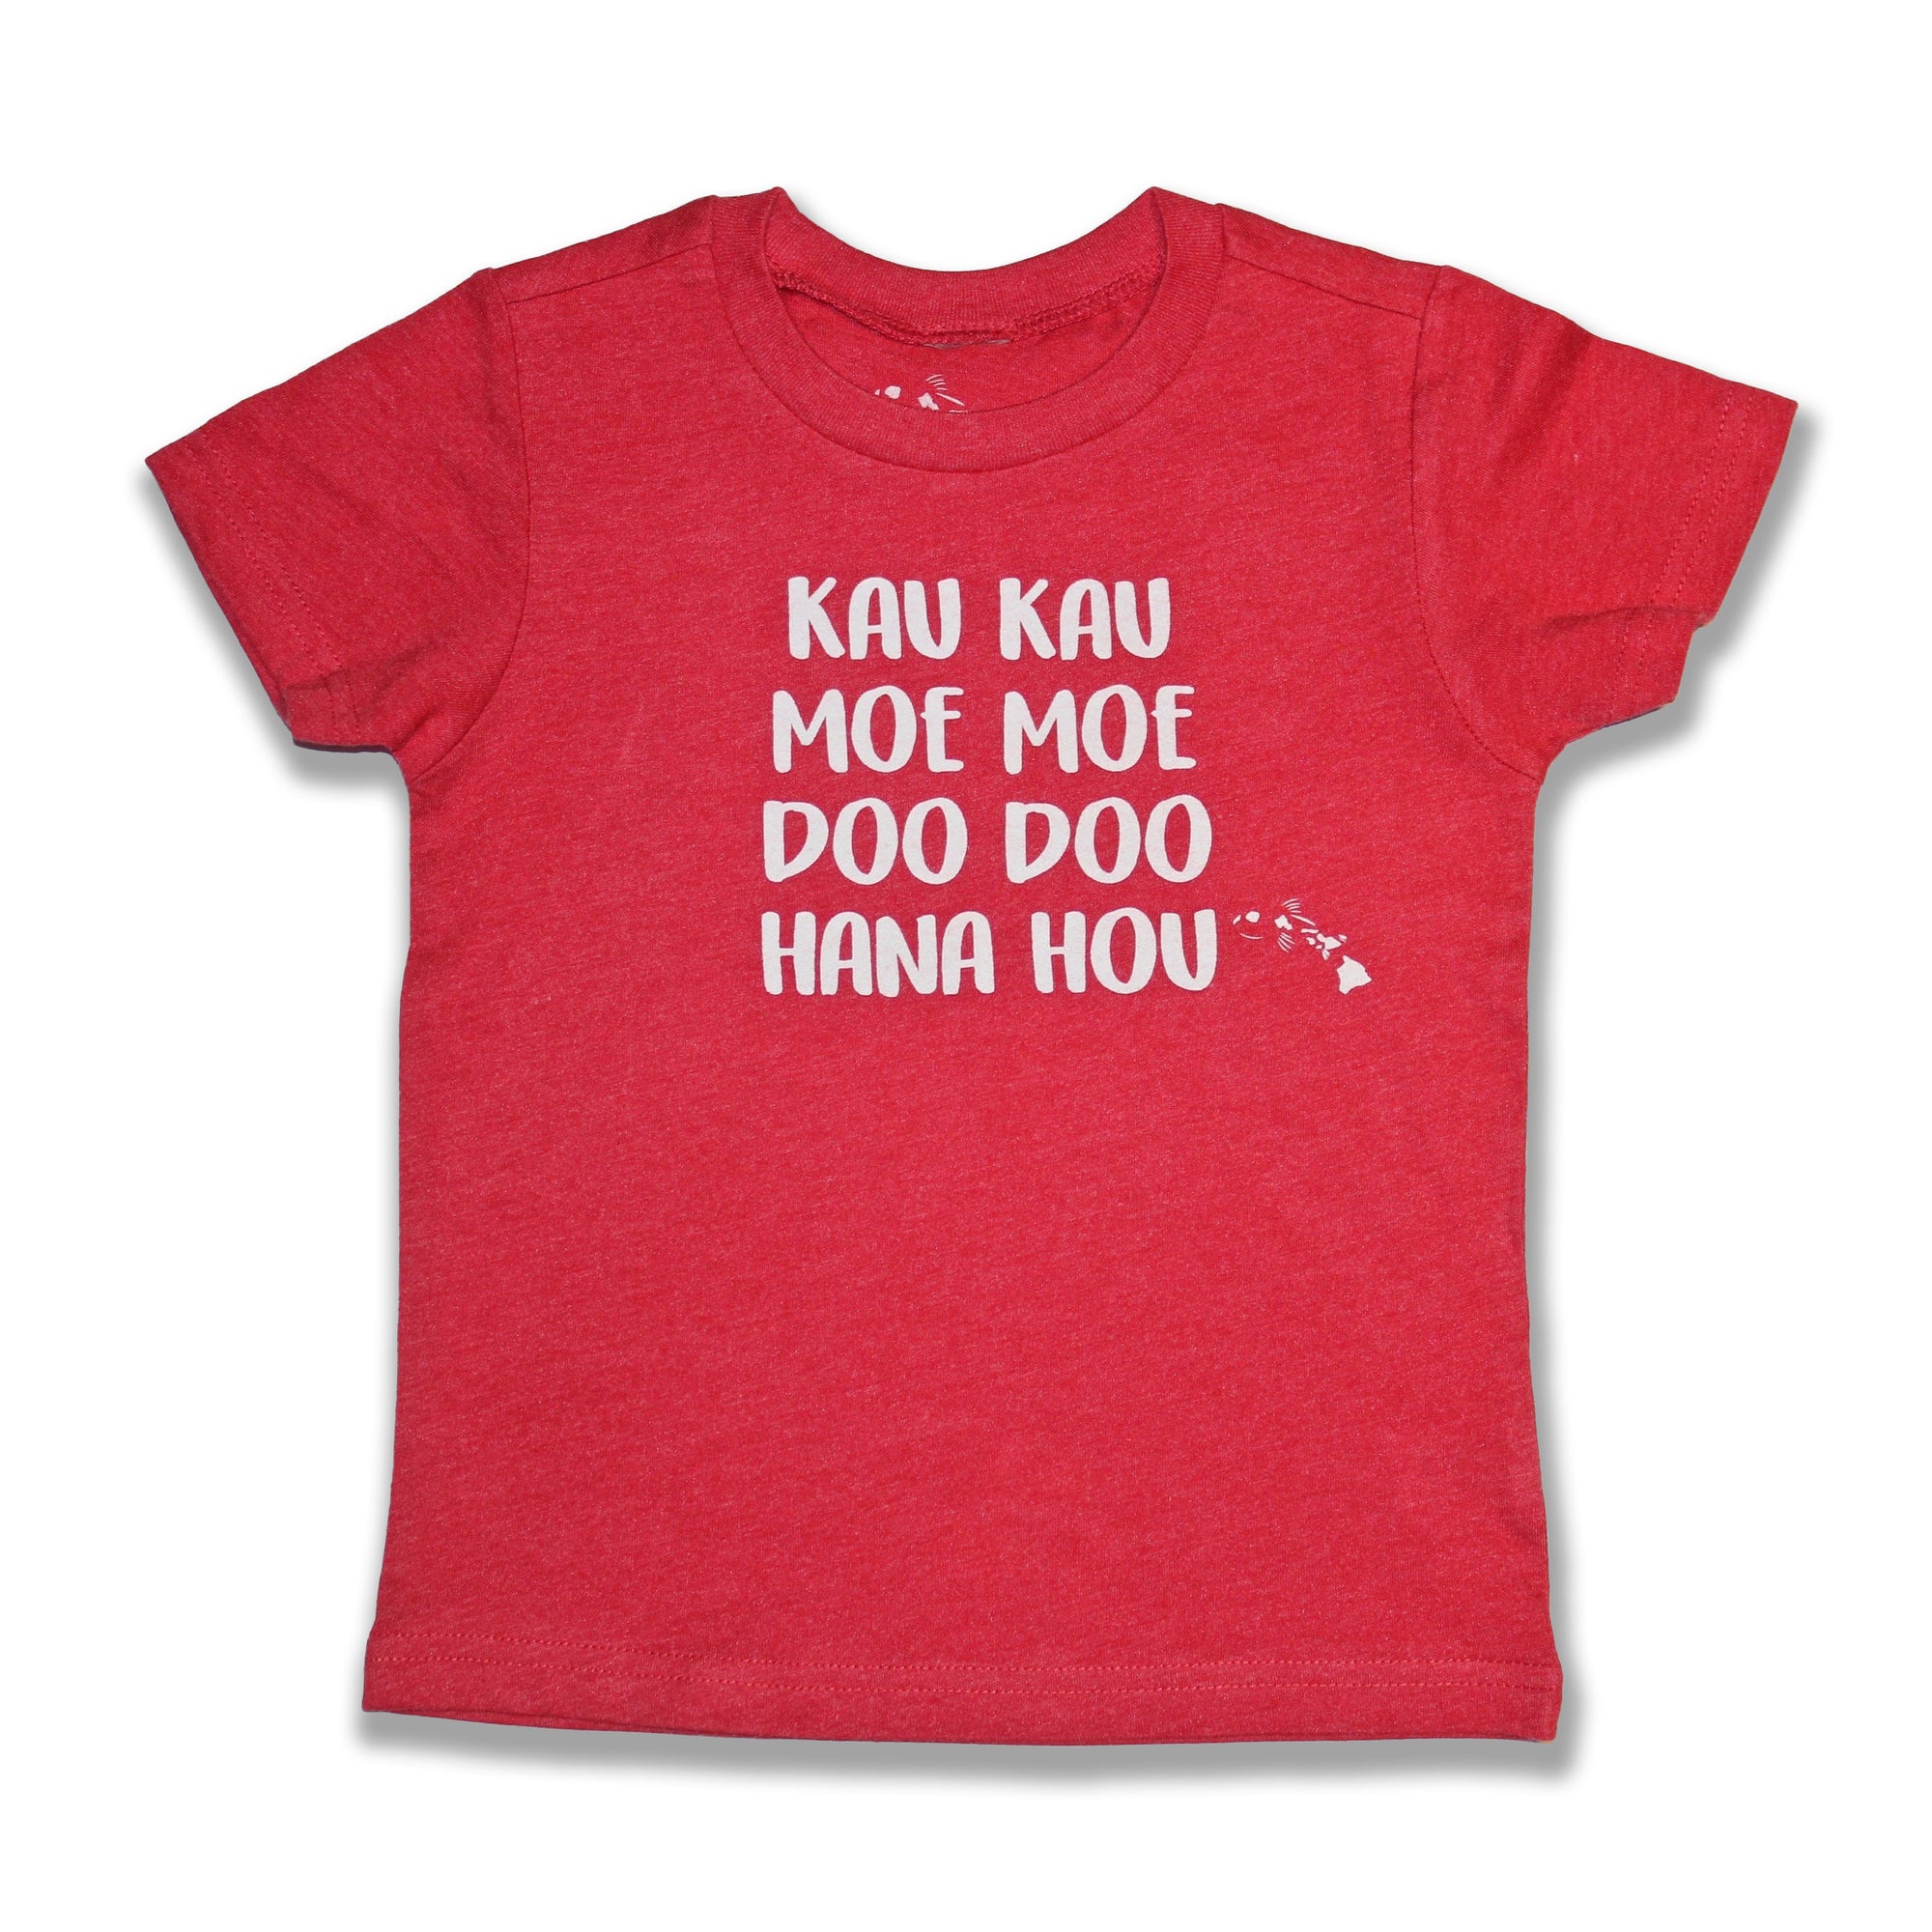 Pop-Up Mākeke - Malia and Company - Kau Kau, Moe Moe, Doo Doo, Hana Hou Keiki T-Shirt - Red - Front View